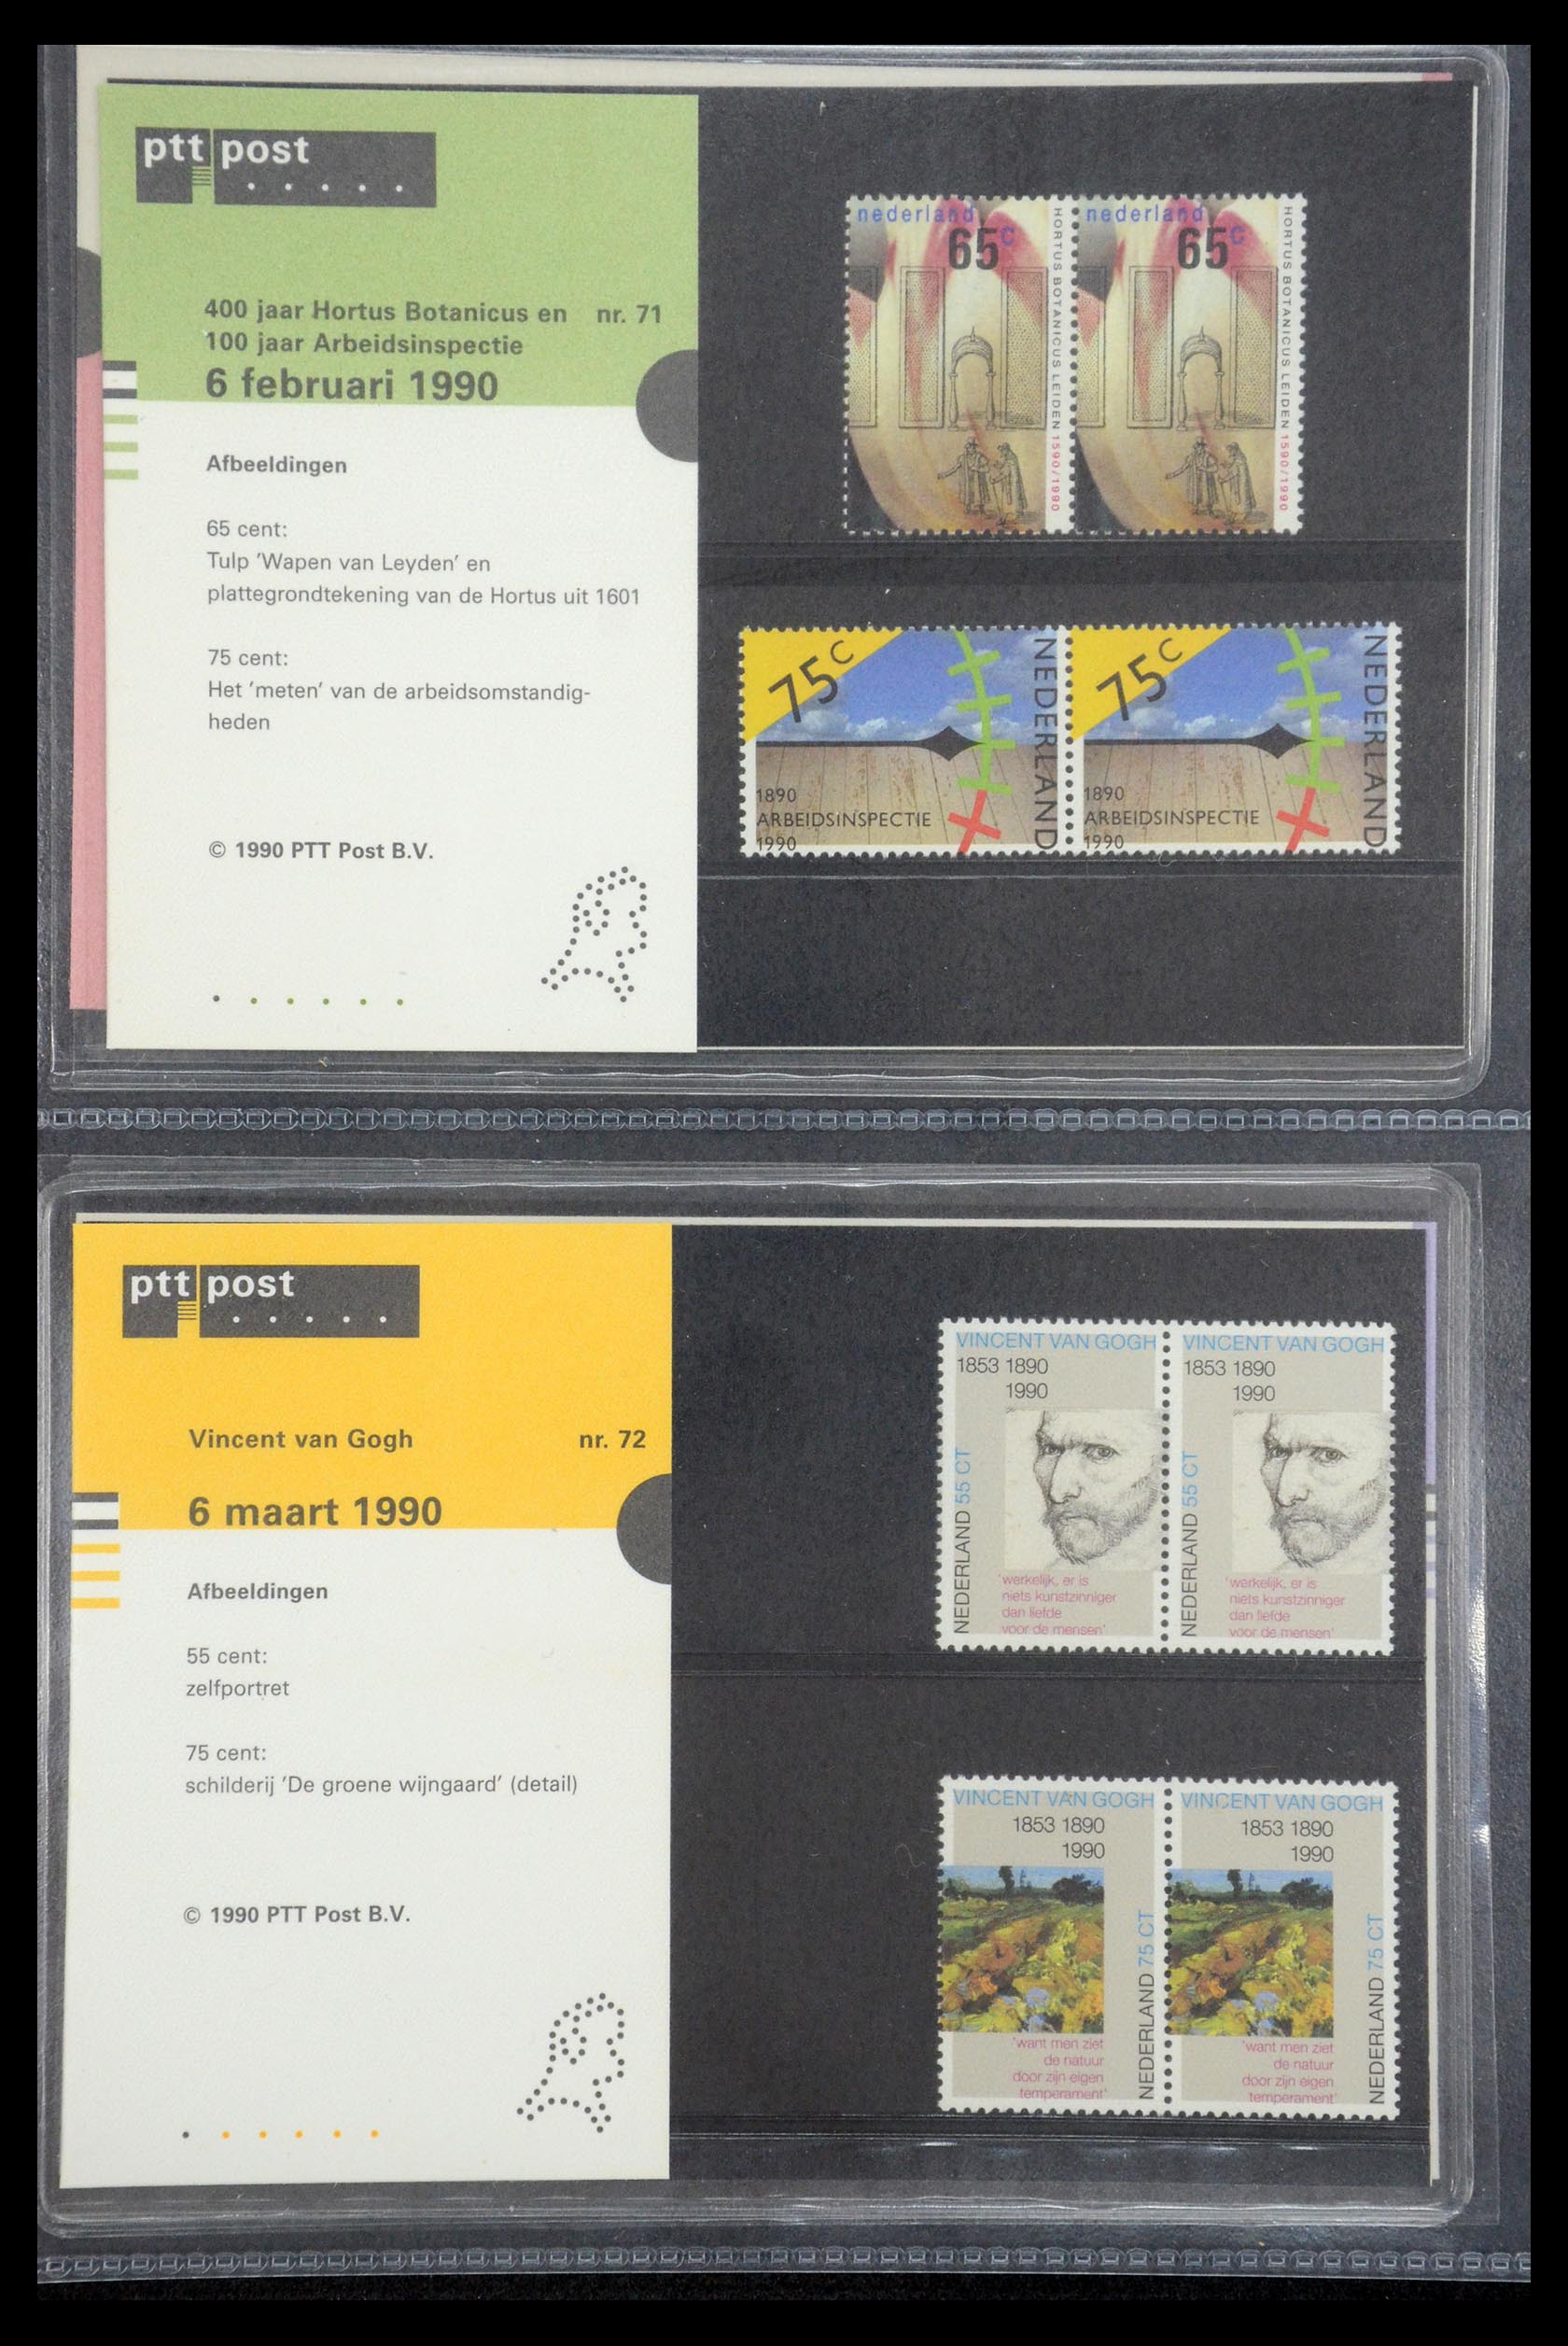 35187 036 - Stamp Collection 35187 Netherlands PTT presentation packs 1982-2019!